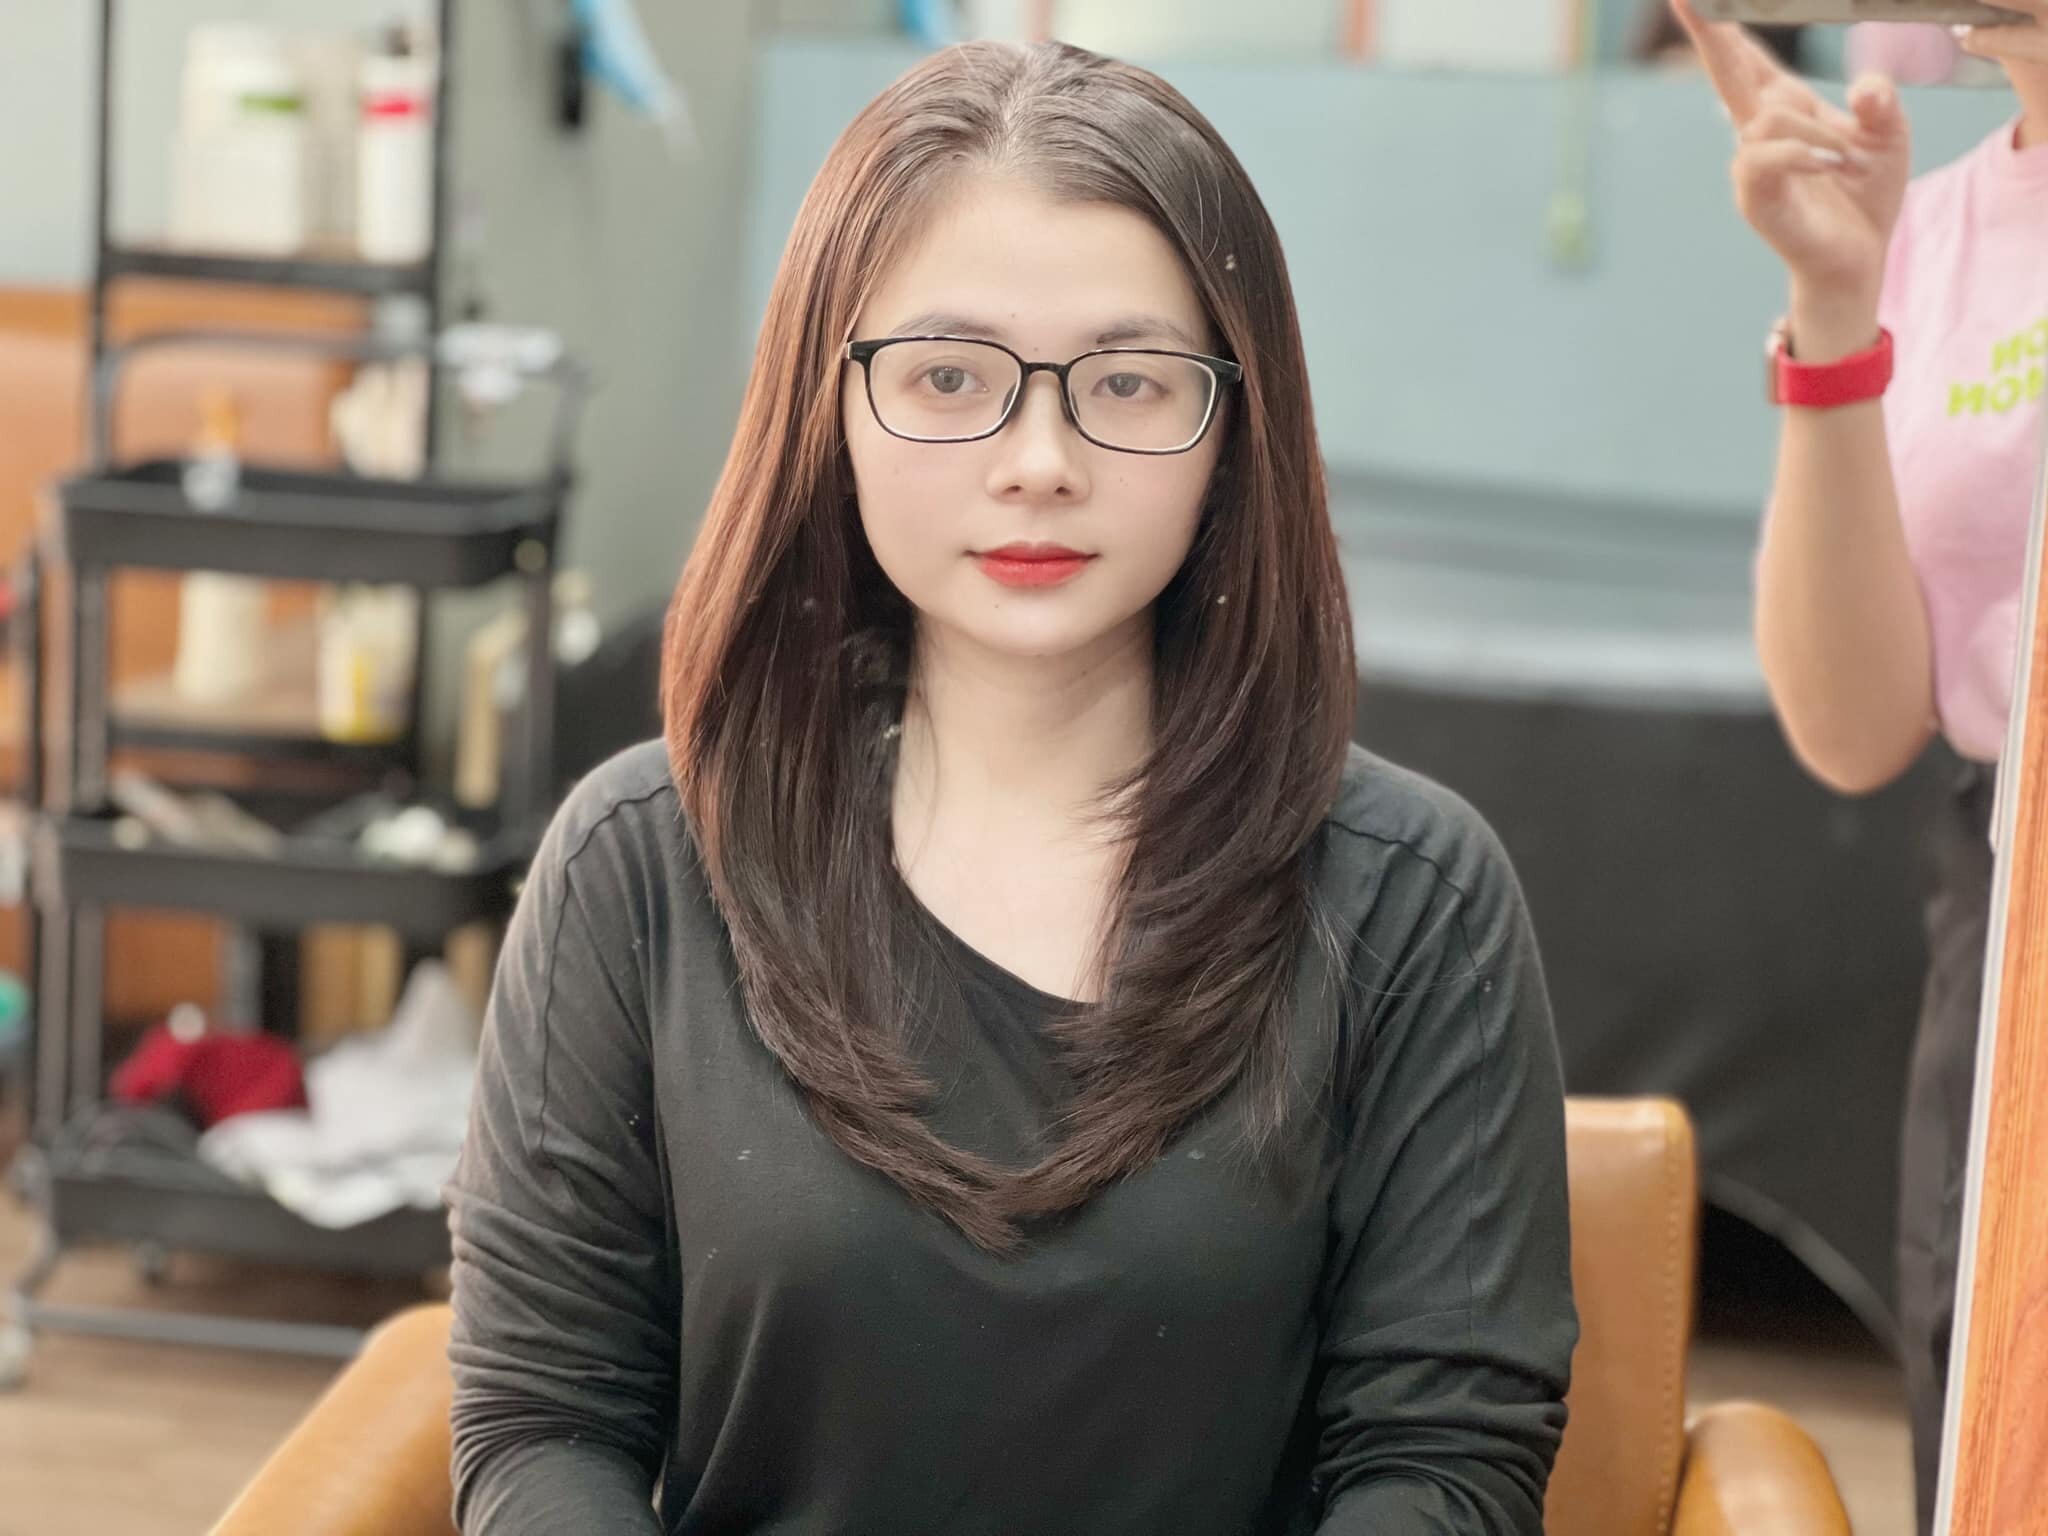 Đội ngũ nhân viên tay nghề cao: Tất cả các nhân viên tại Salon Minh Hằng đều được đào tạo và có kinh nghiệm trong việc làm tóc, đảm bảo chất lượng dịch vụ luôn tốt nhất.